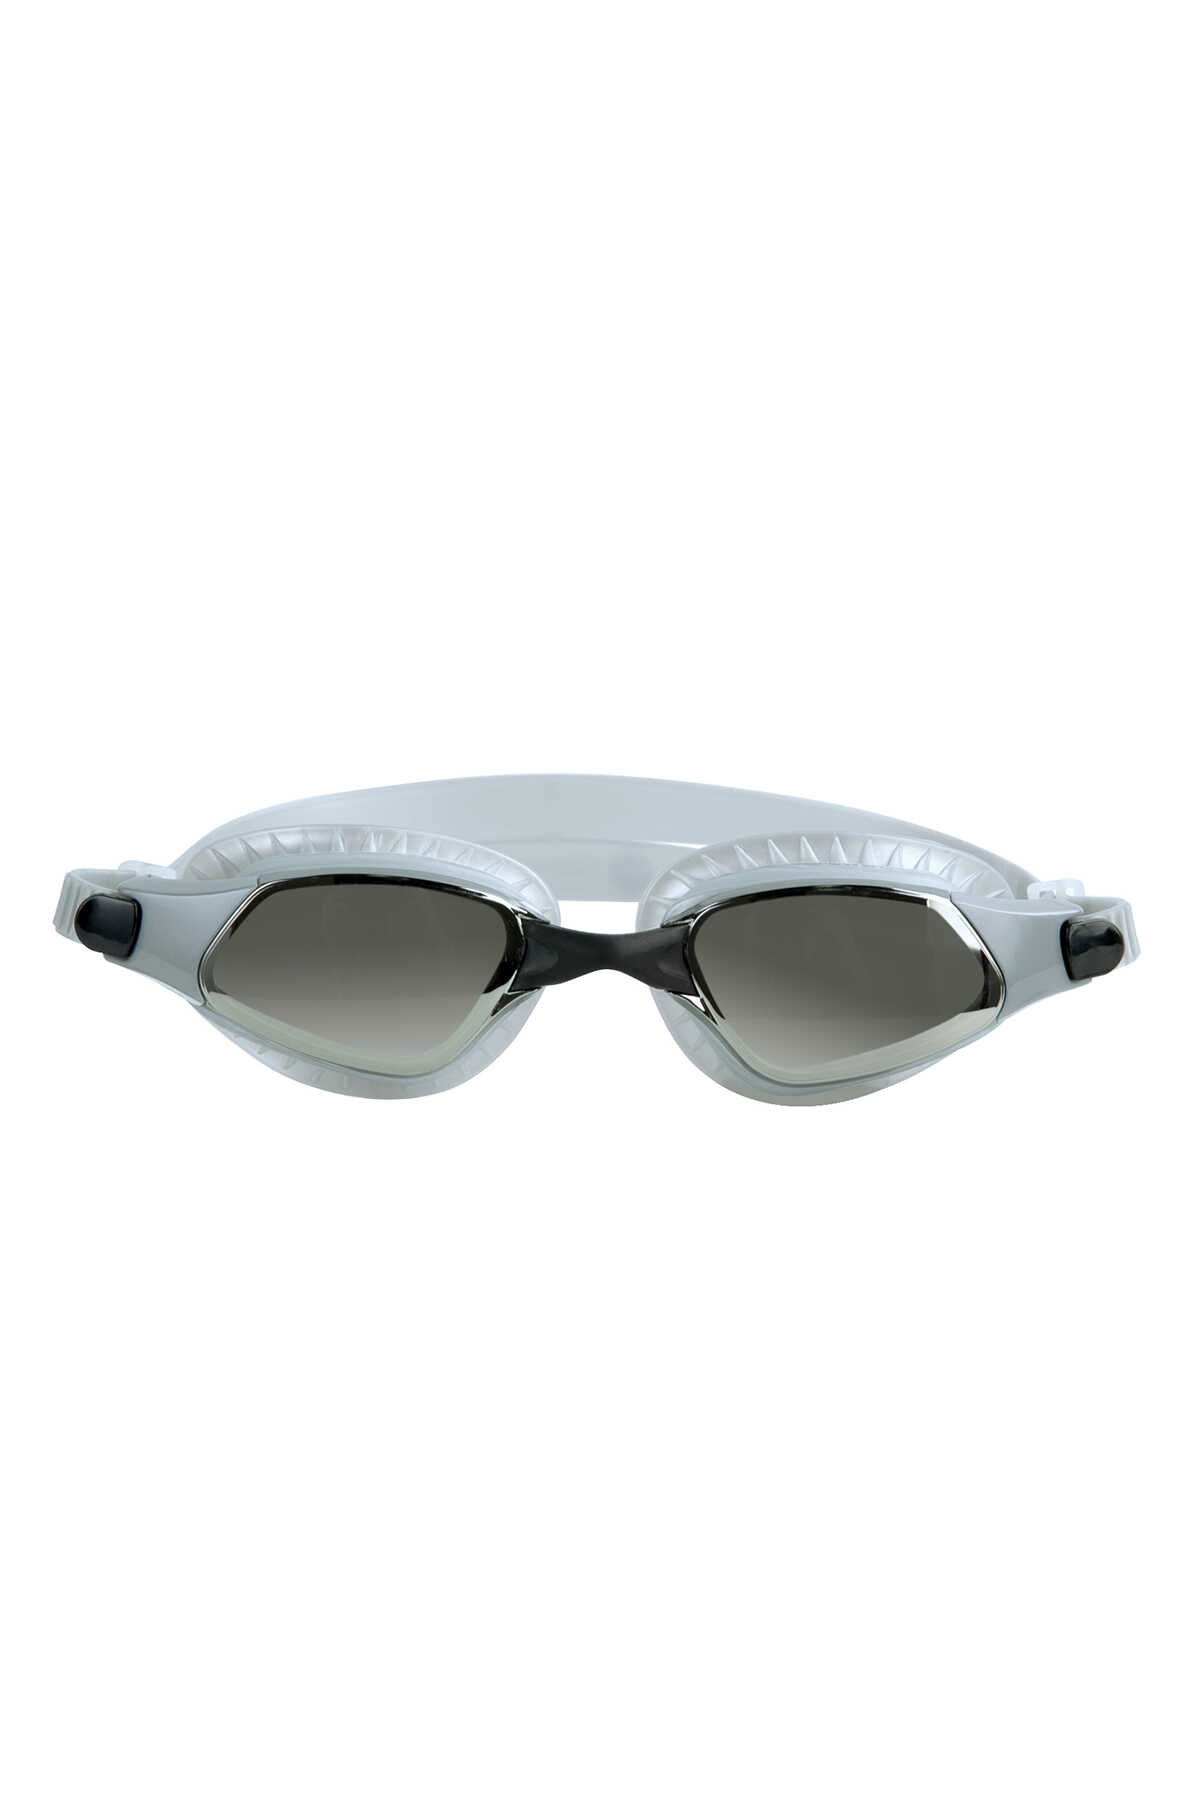 Slazenger - Slazenger Reflex GT14 Unisex Yüzücü Gözlüğü Gümüş